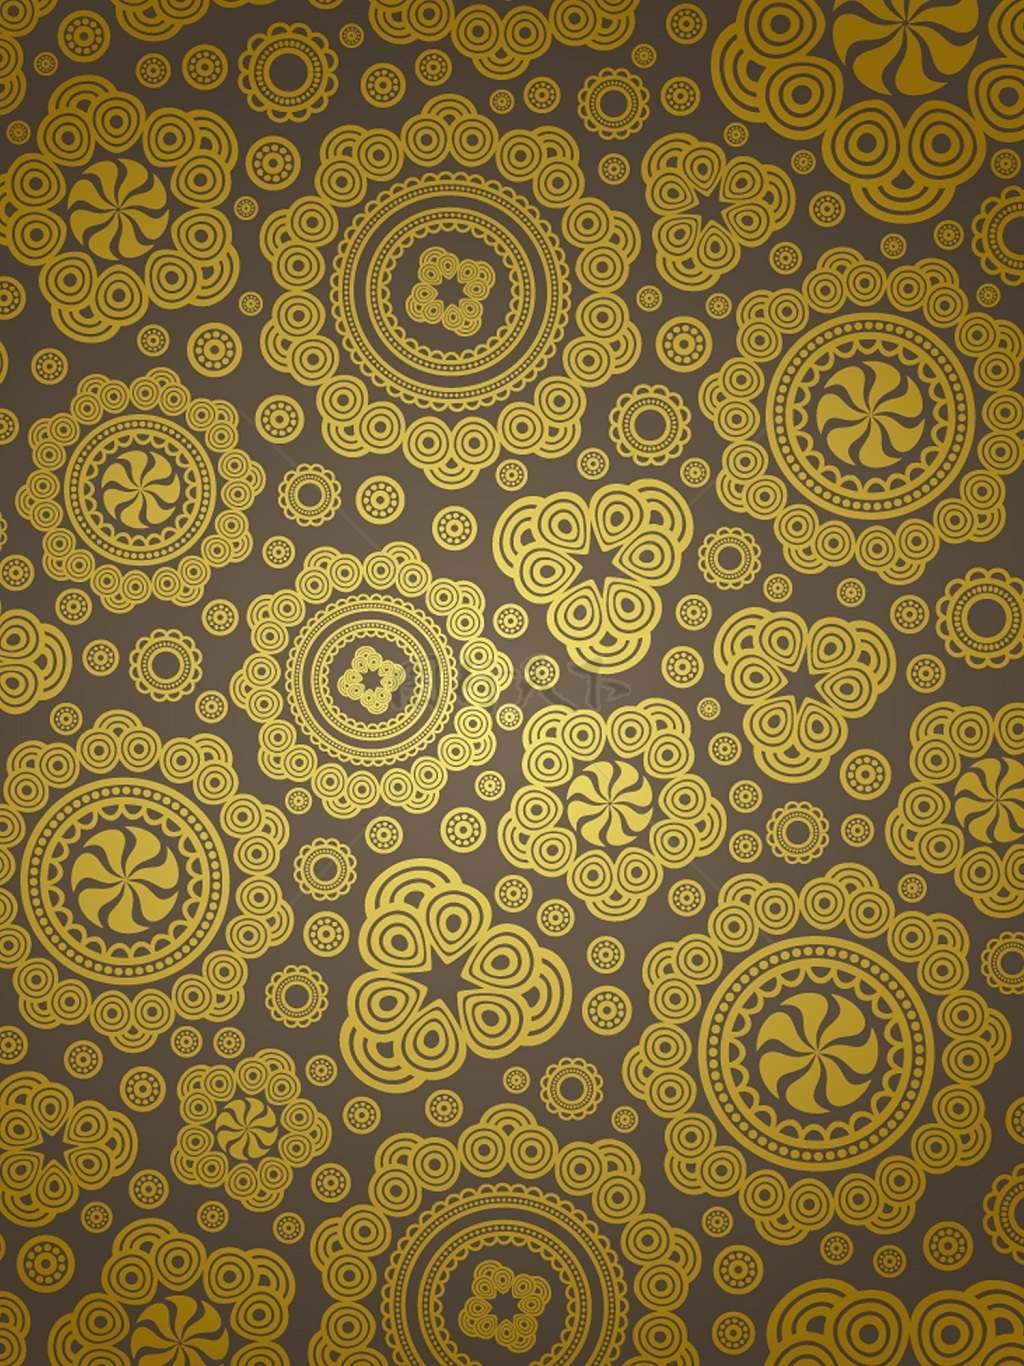 传统 欧式俄式花卉底图底纹  图案背景贴图 棕底圆形金花图